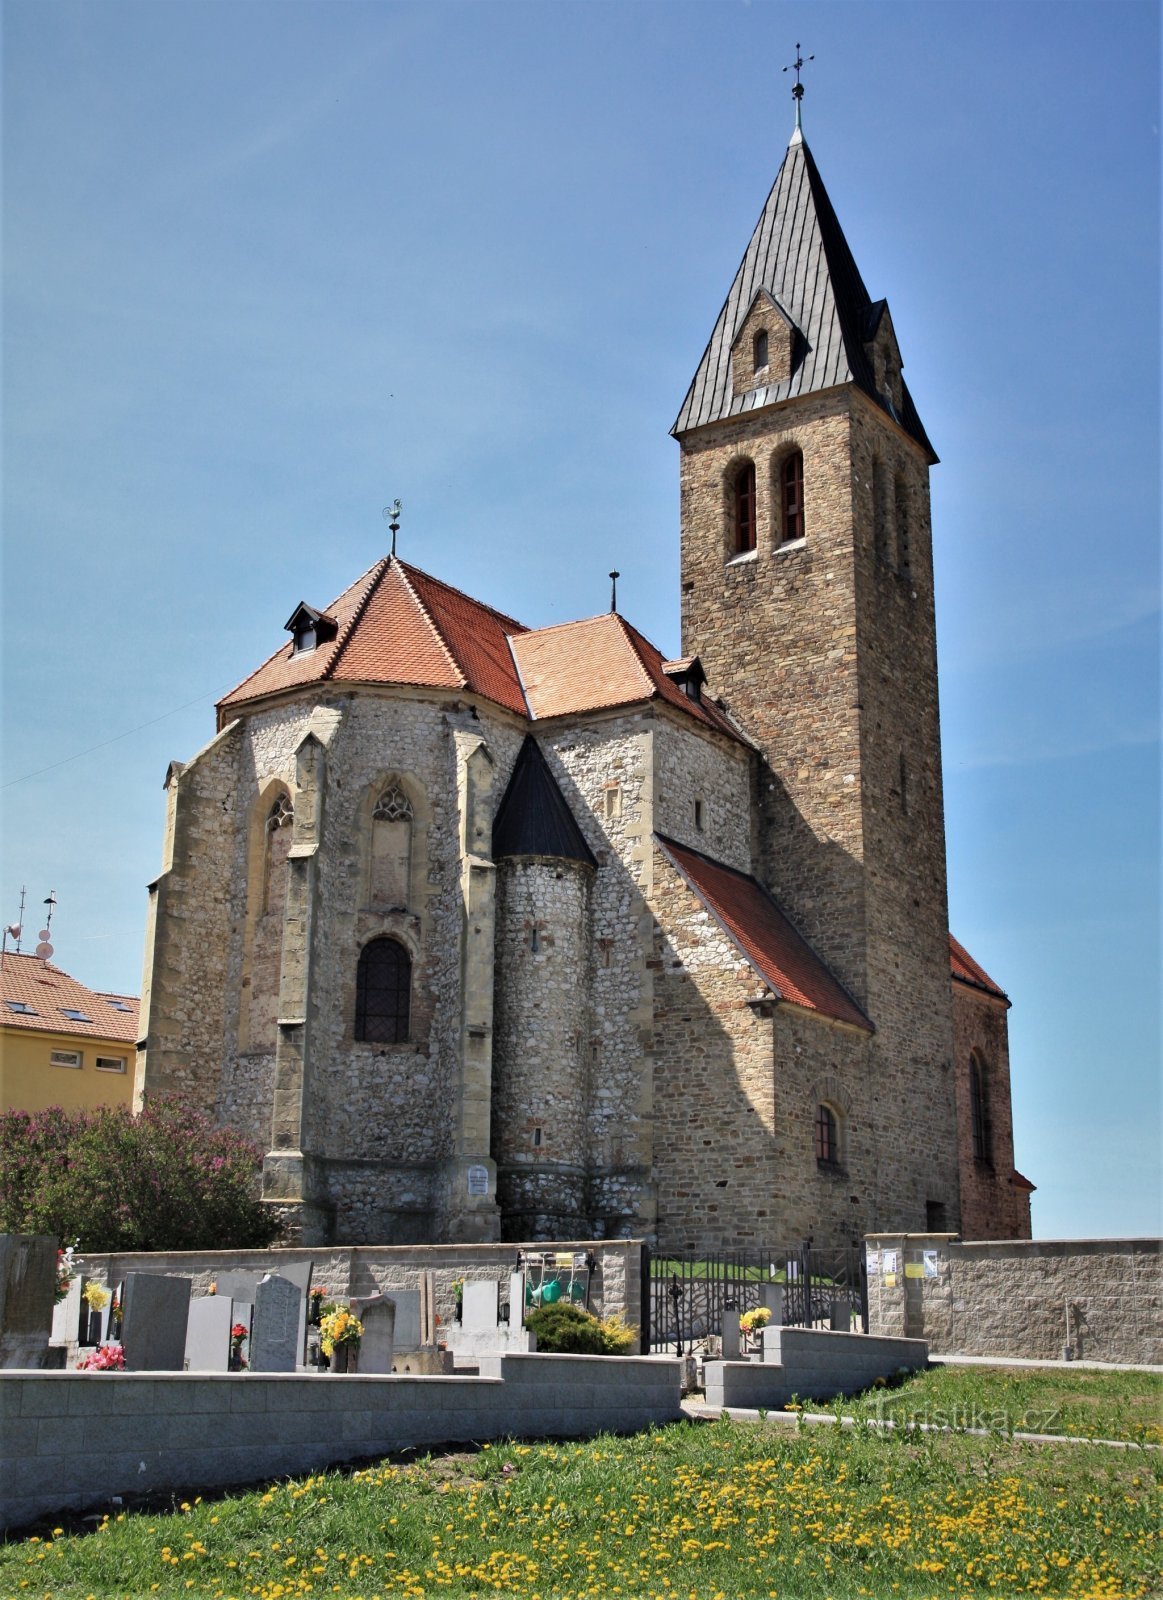 Jaječí - Biserica Sf. Jan Ktitel